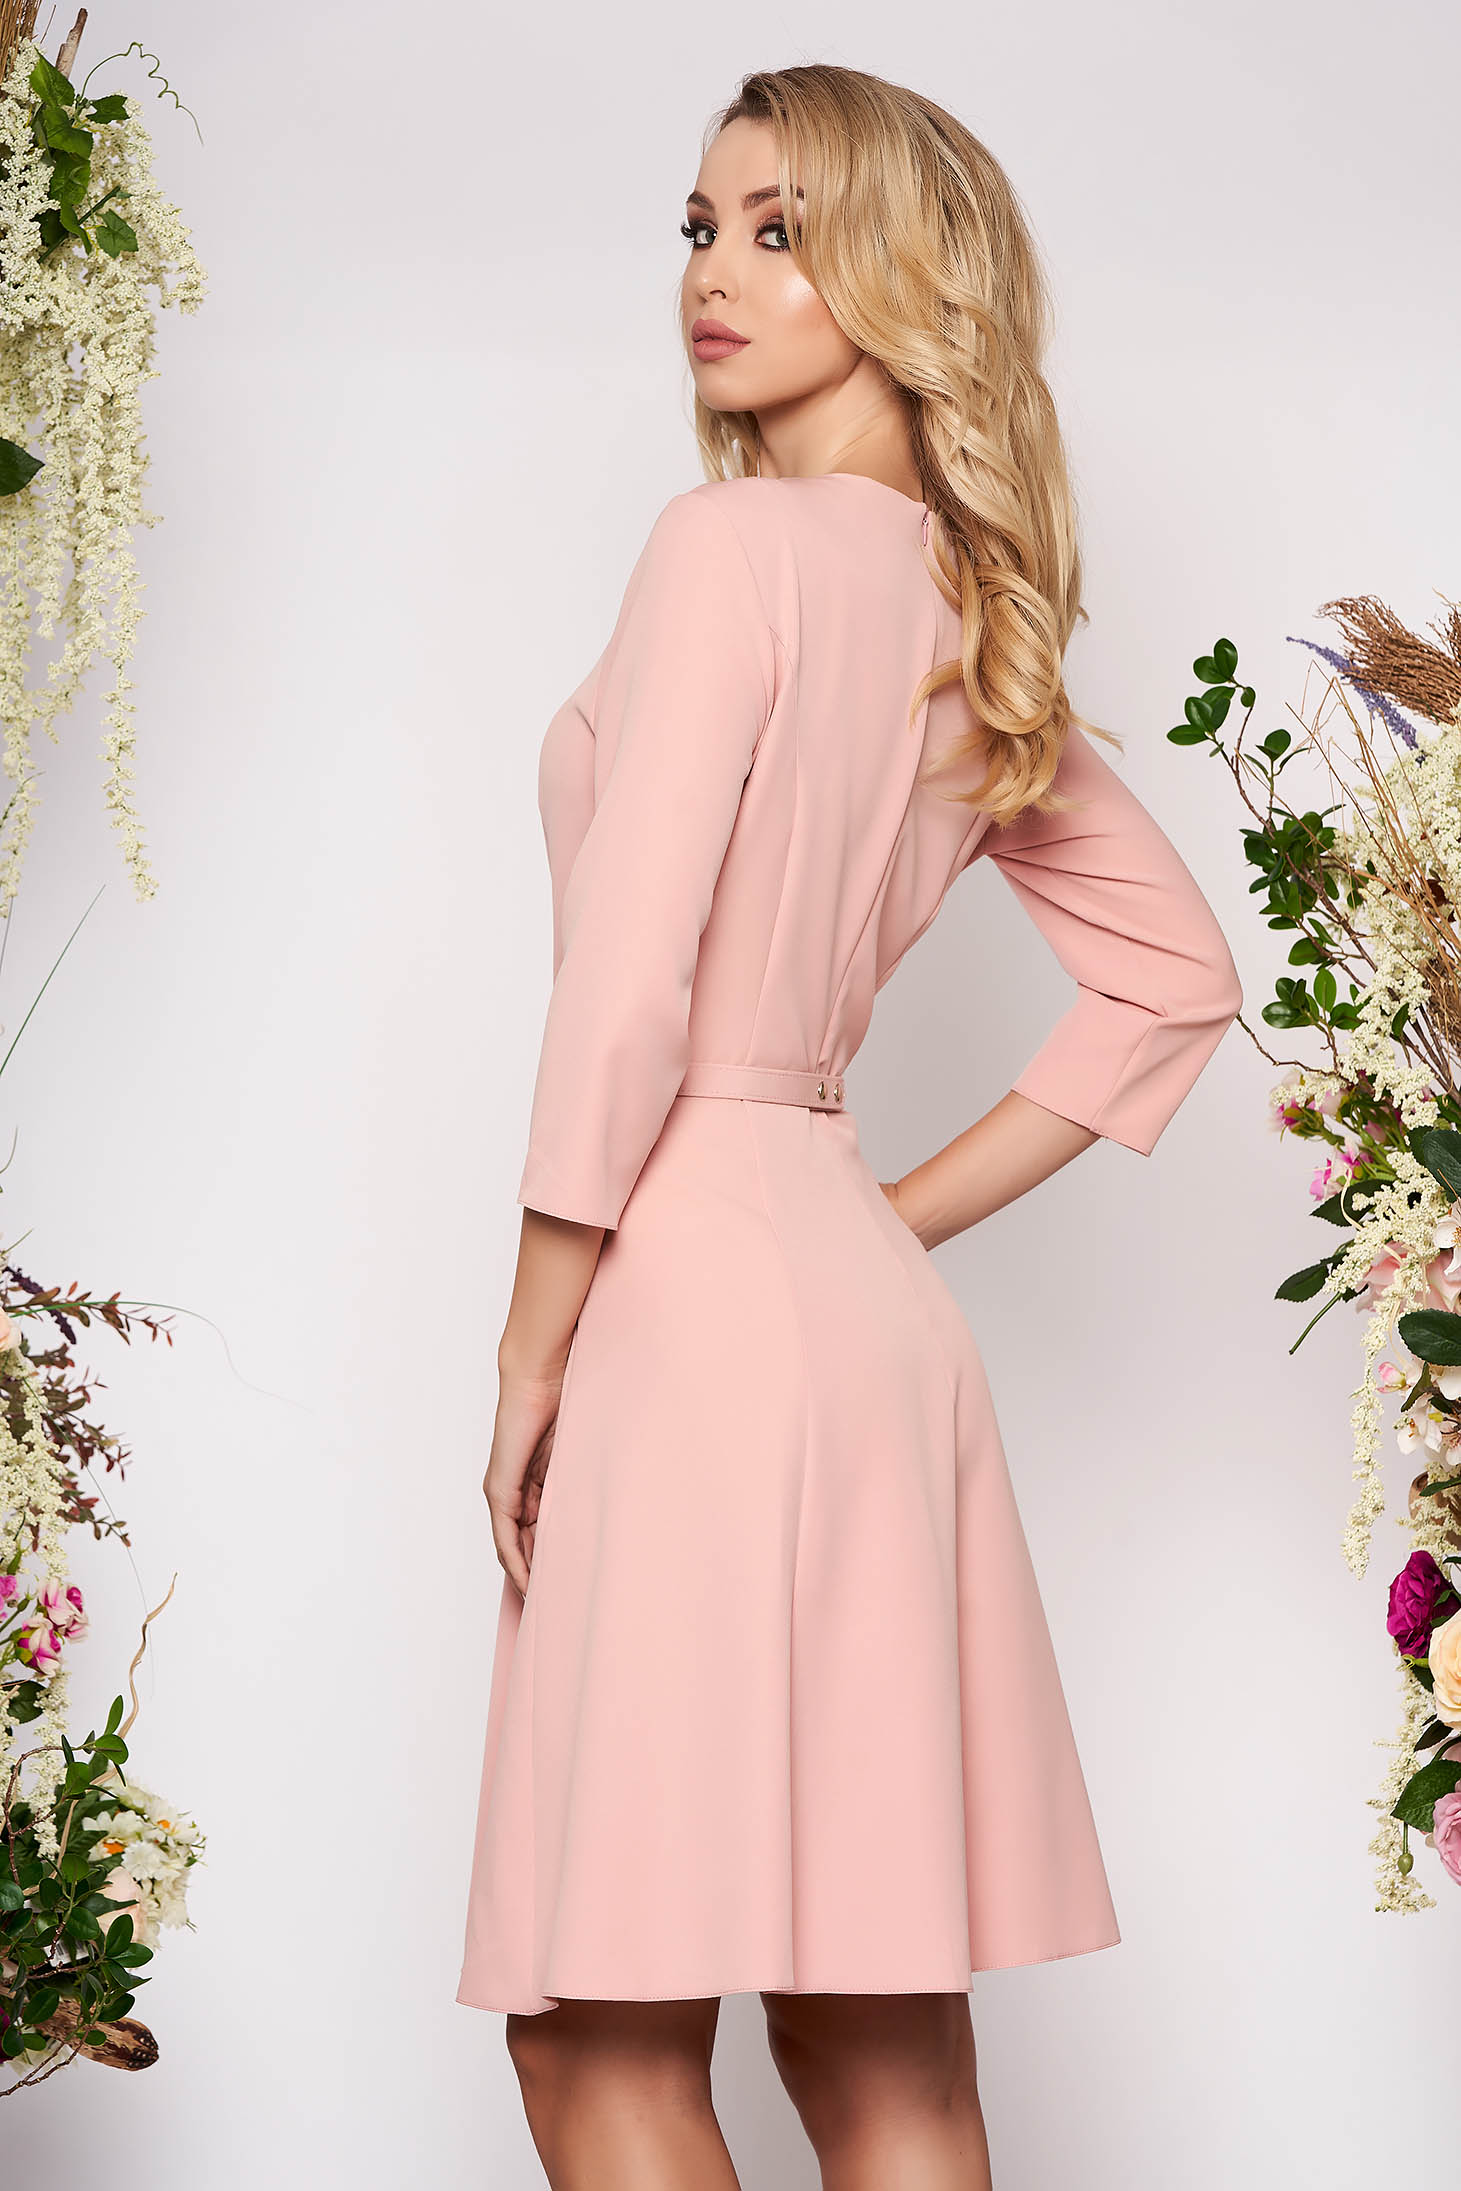 Rochie roz eleganta in clos din material fin la atingere detalii handmade cu accesoriu tip curea 2 - StarShinerS.ro